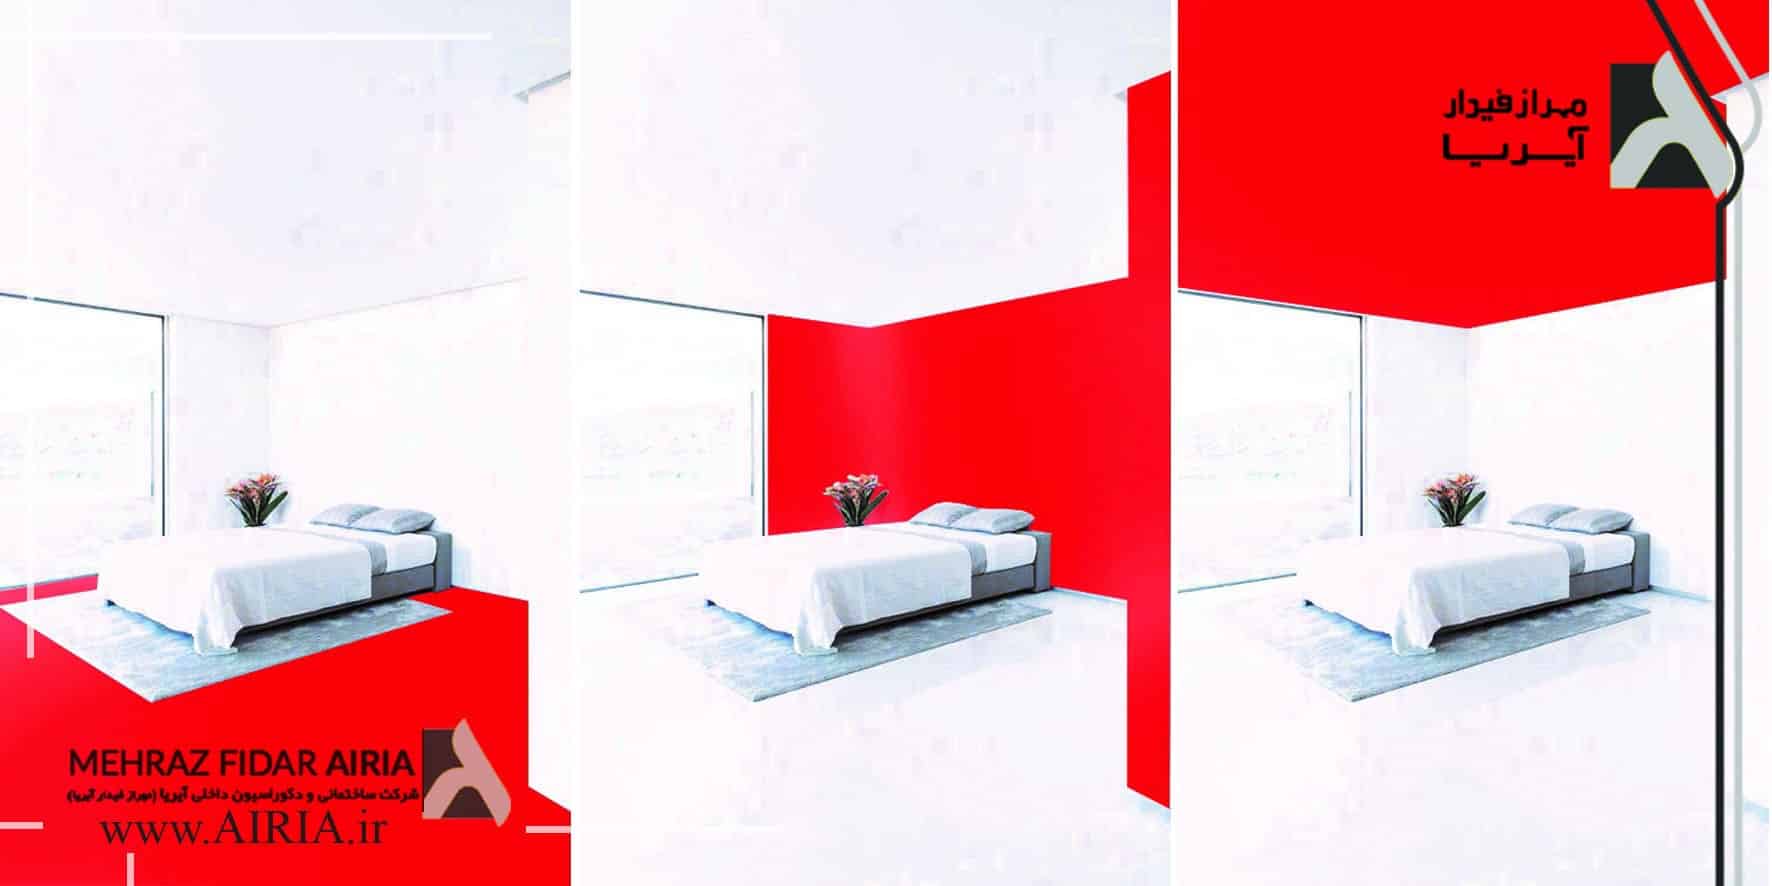 تأثیرات رنگ قرمز در فضا بعنوان بخشی از تأثیرات رنگهای مختلف در طراحی داخلی